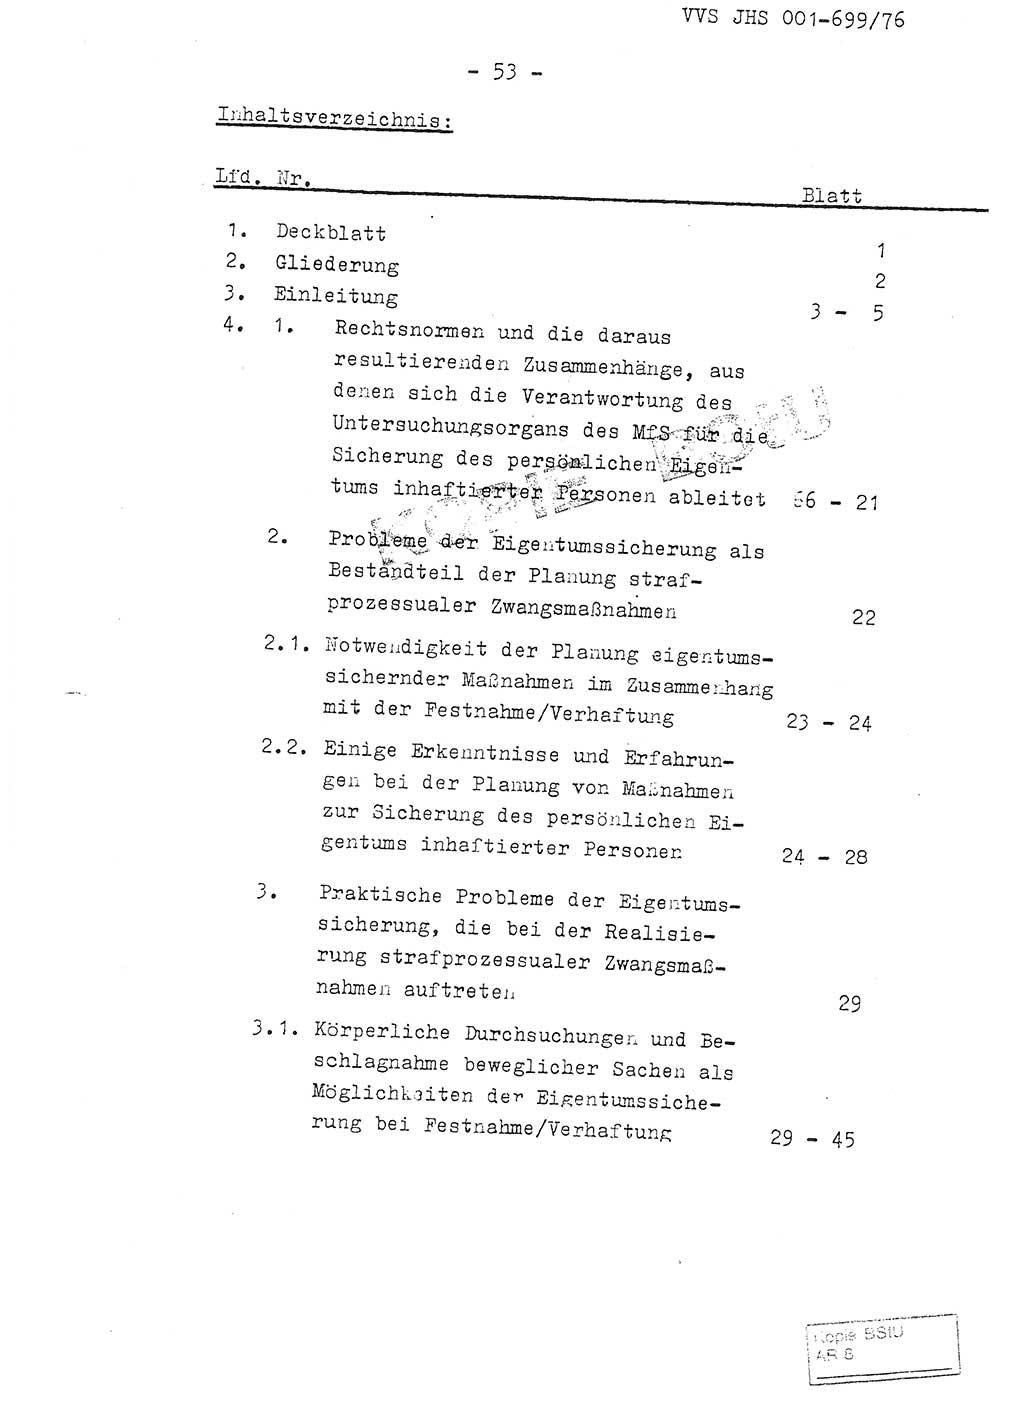 Fachschulabschlußarbeit Leutnant Volkmar Taubert (HA Ⅸ/9), Leutnant Axel Naumann (HA Ⅸ/9), Unterleutnat Detlef Debski (HA Ⅸ/9), Ministerium für Staatssicherheit (MfS) [Deutsche Demokratische Republik (DDR)], Juristische Hochschule (JHS), Vertrauliche Verschlußsache (VVS) 001-699/76, Potsdam 1976, Seite 53 (FS-Abschl.-Arb. MfS DDR JHS VVS 001-699/76 1976, S. 53)